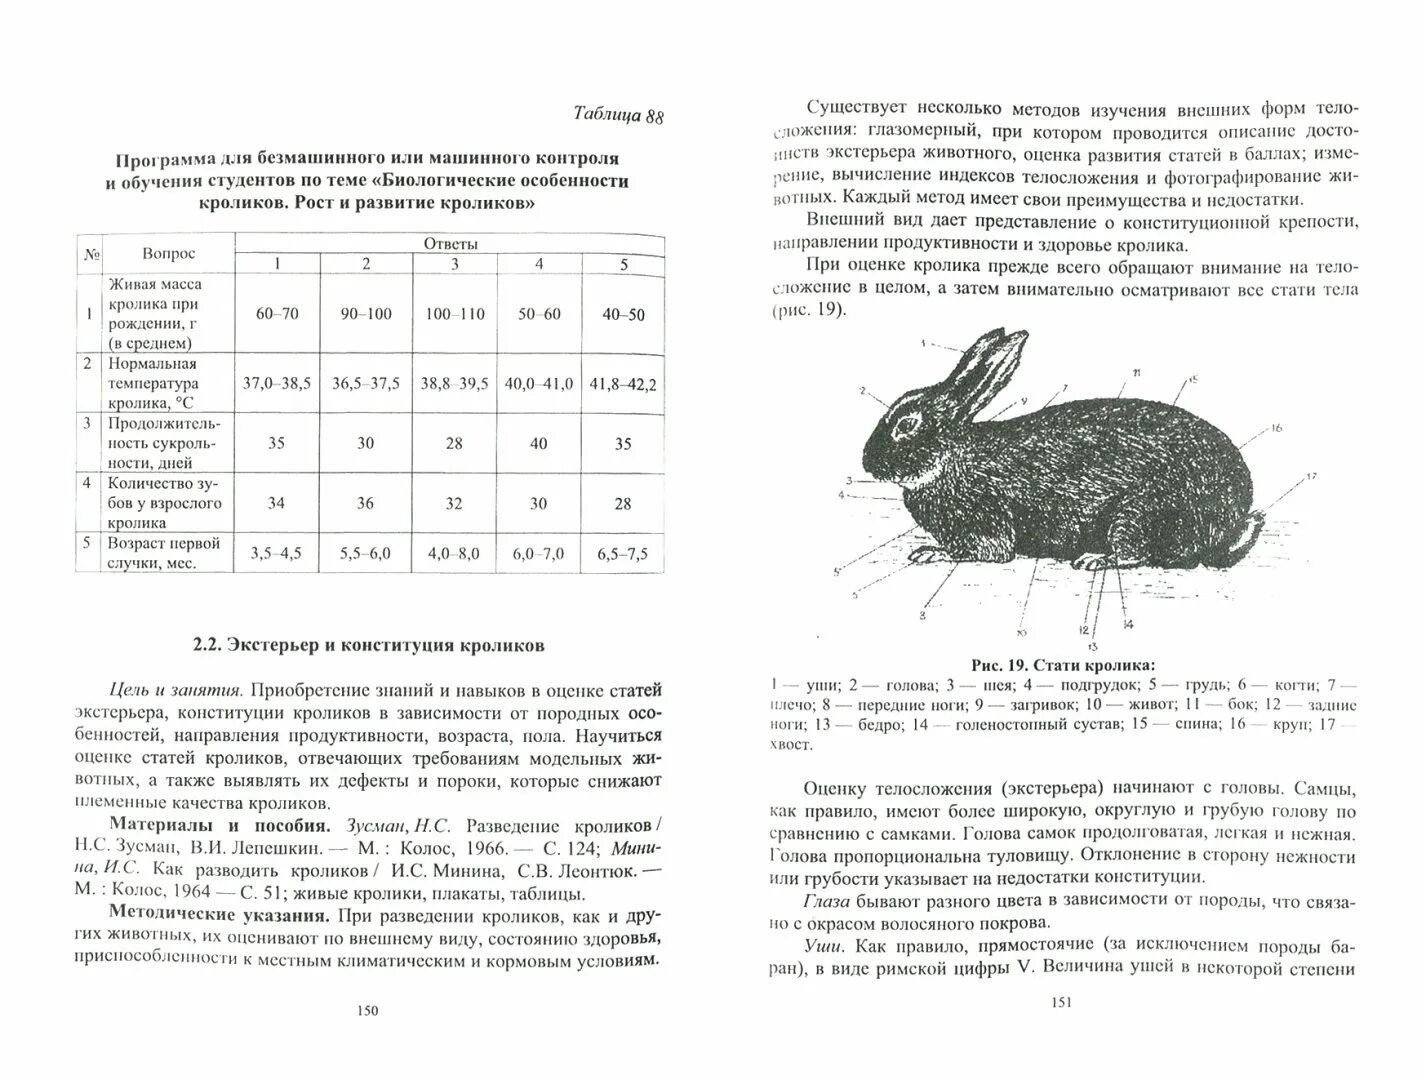 Стати кролика. Направления продуктивности кроликов. Типы Конституции кроликов. Советские книги по кролиководству.